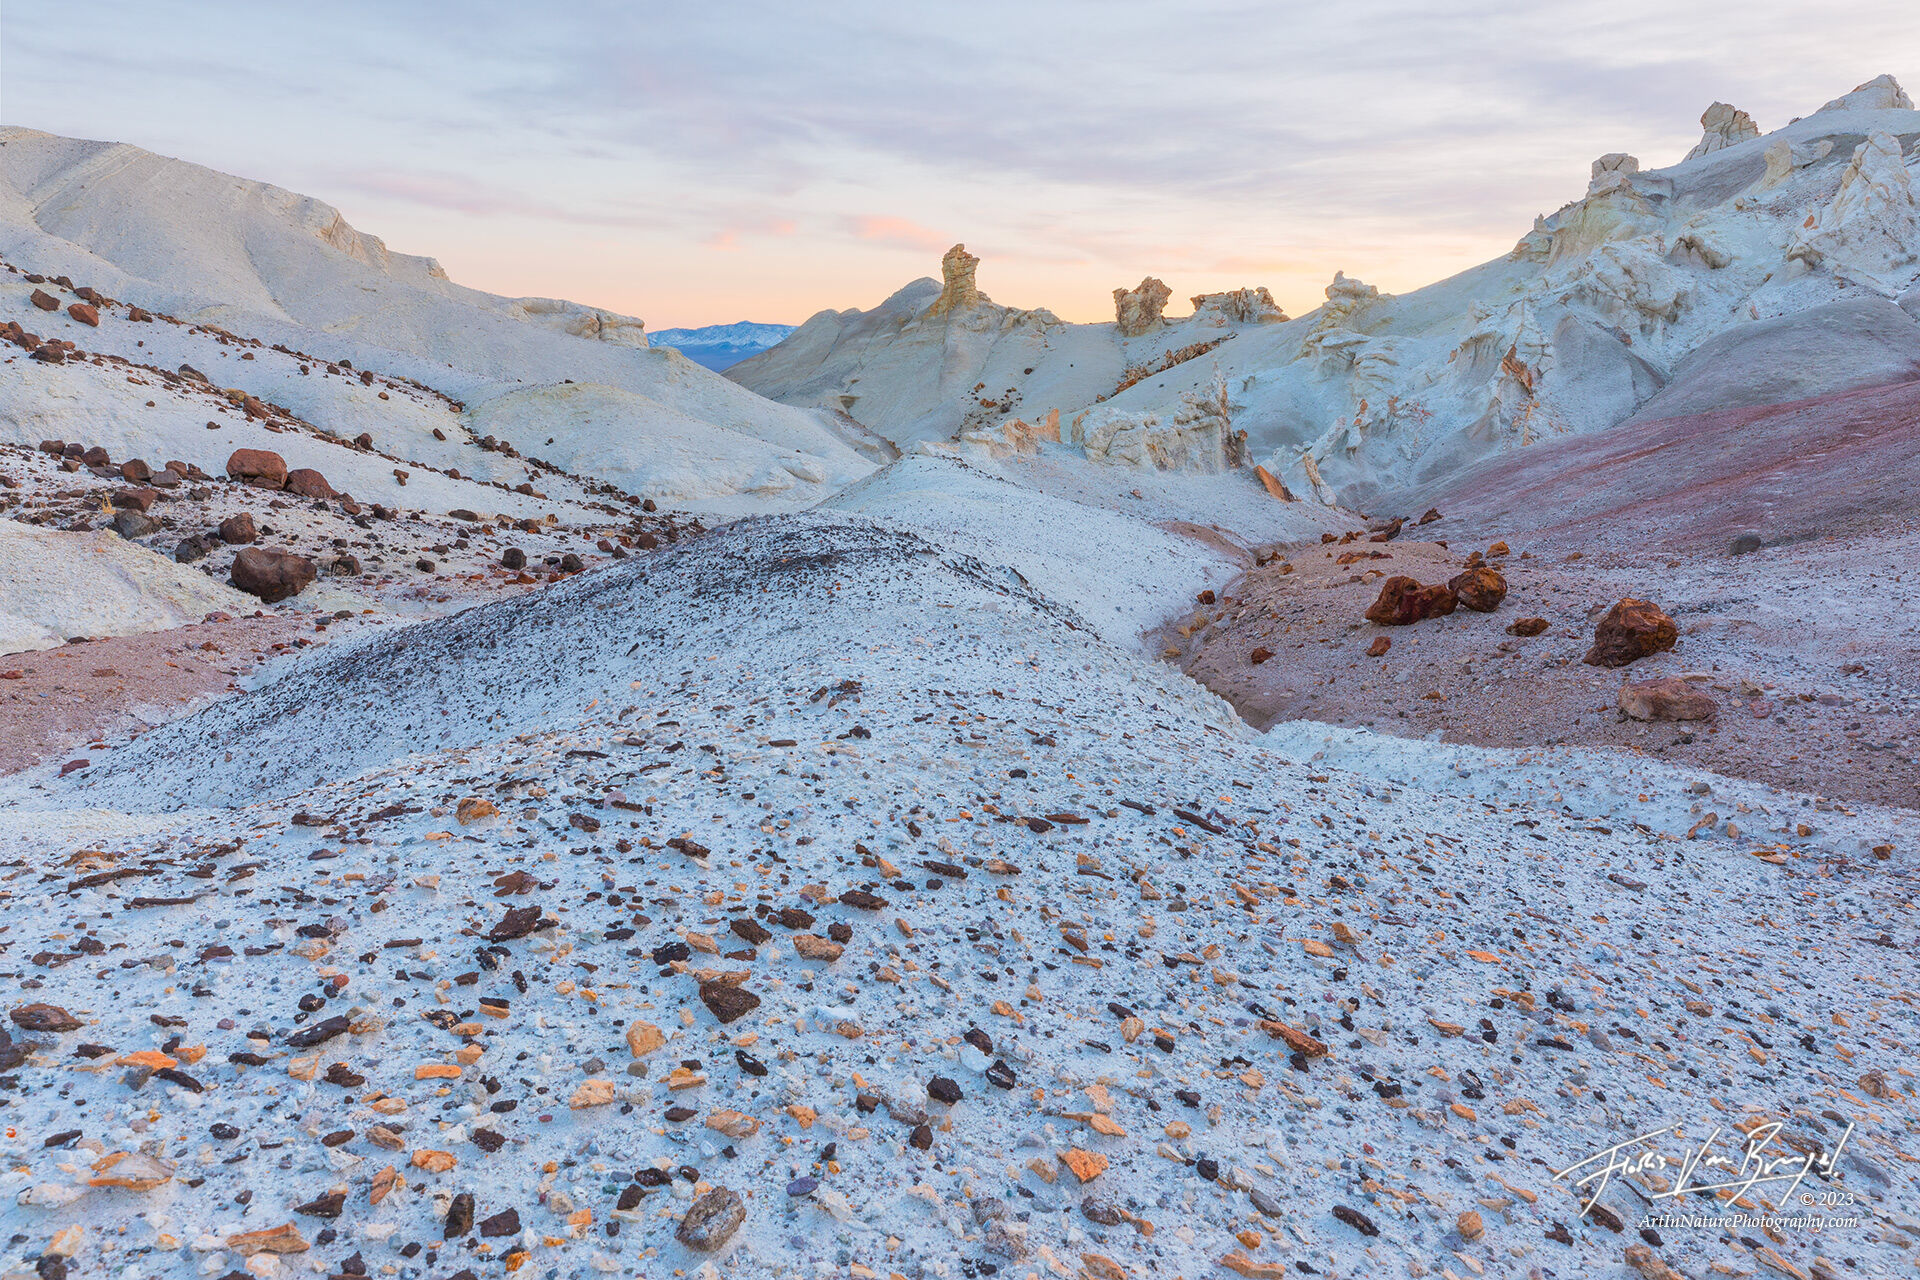 Soft sunset light illuminates the slowly eroding chalky white badlands in Nevada's Monte Cristo range.